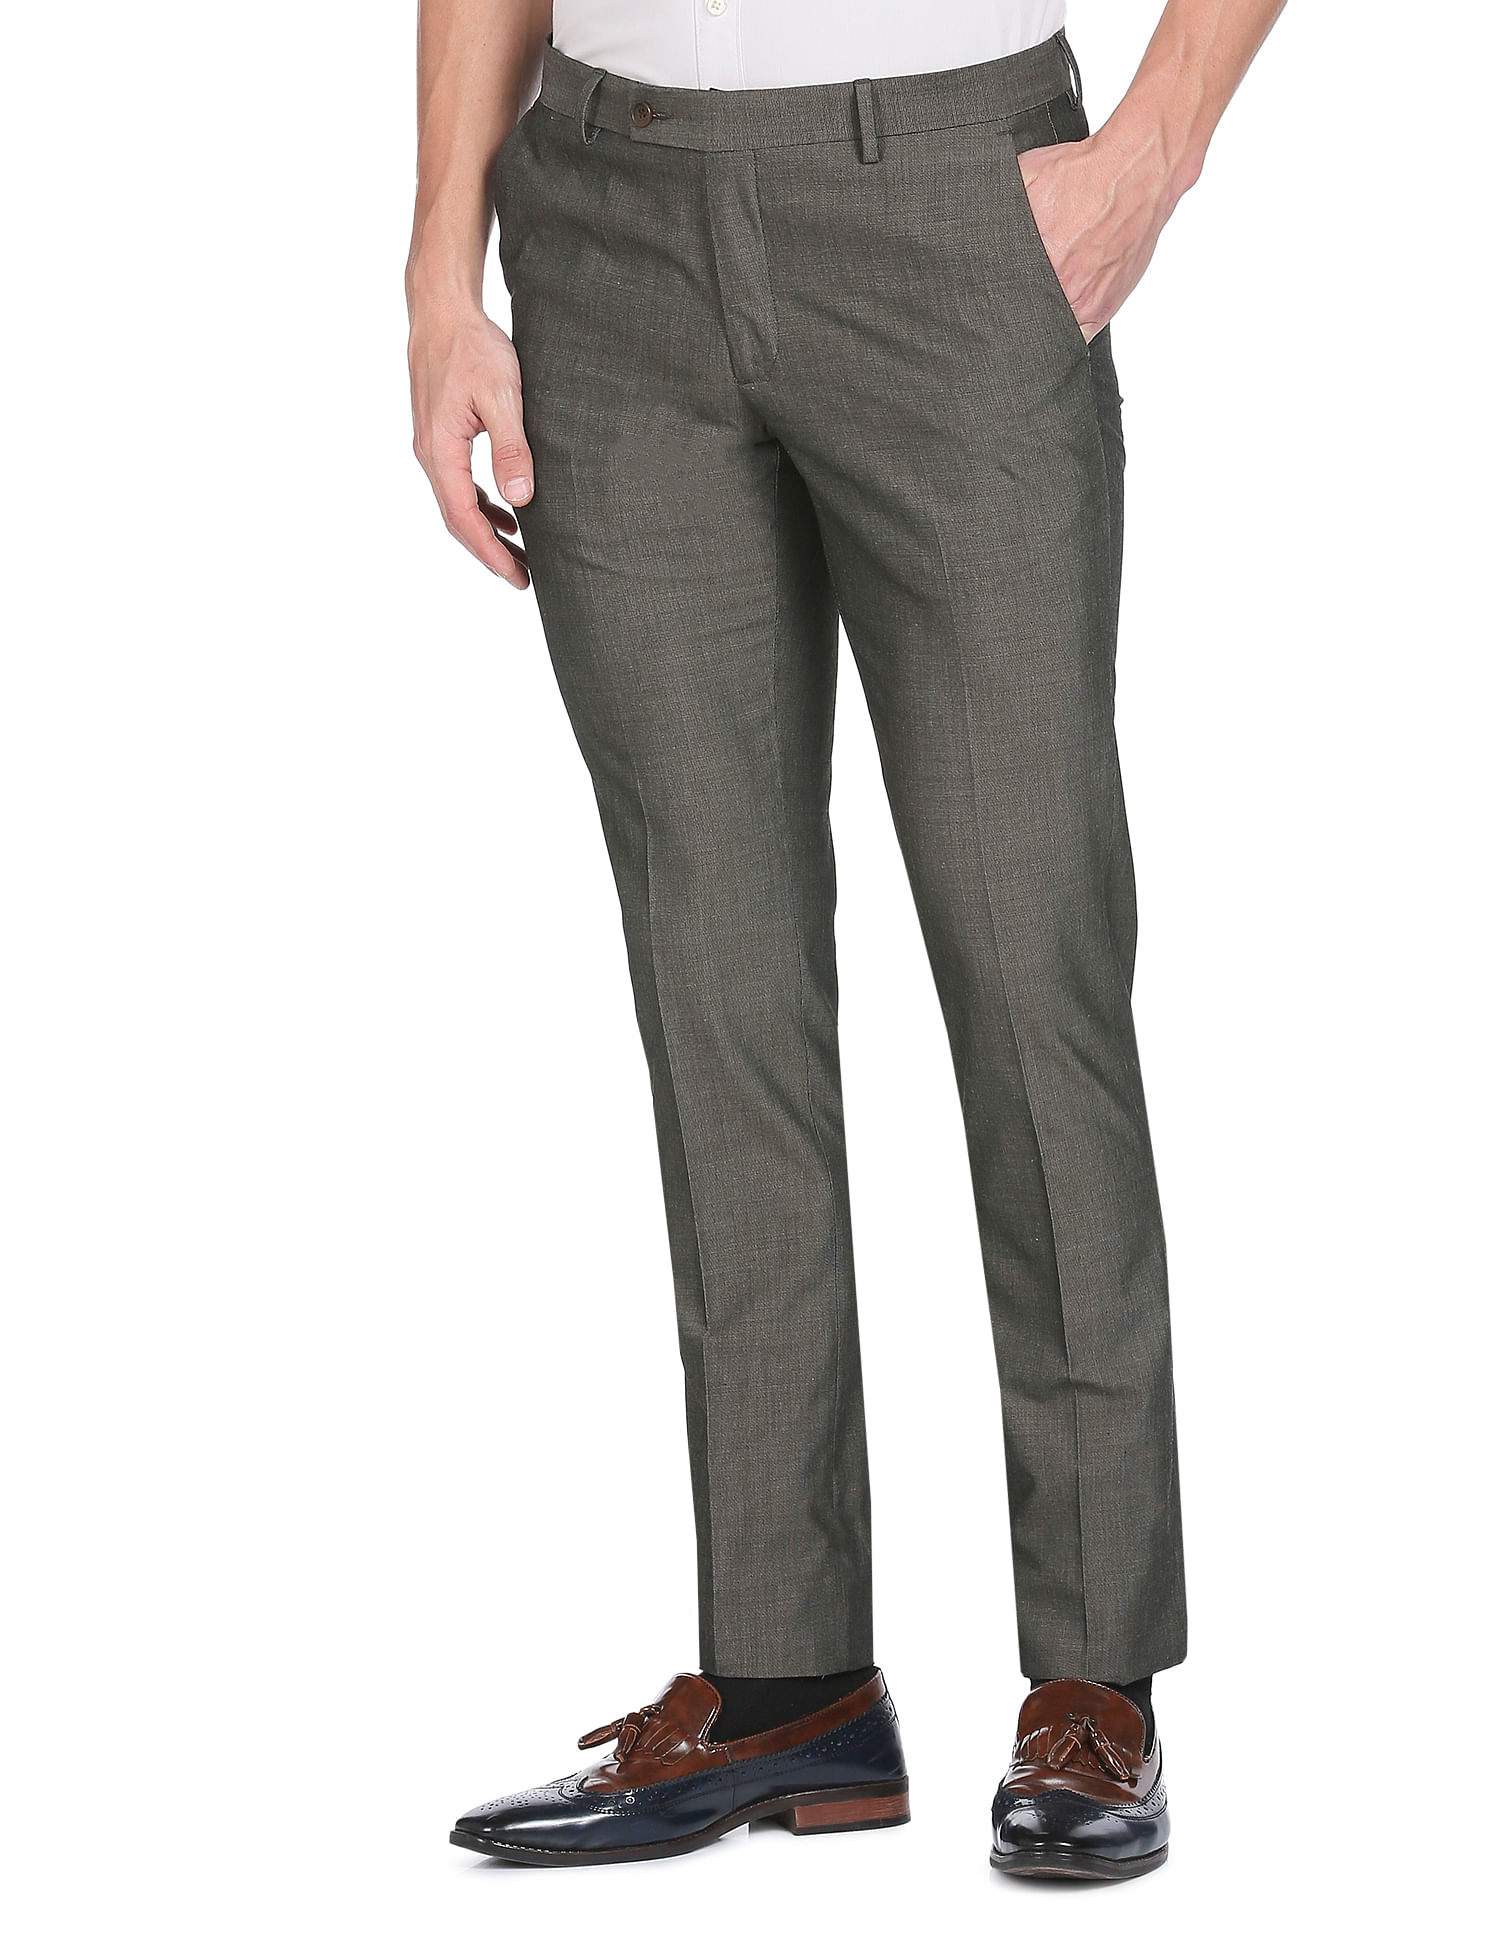 Mens Flat Front Pants (BK) - The Uniform Store